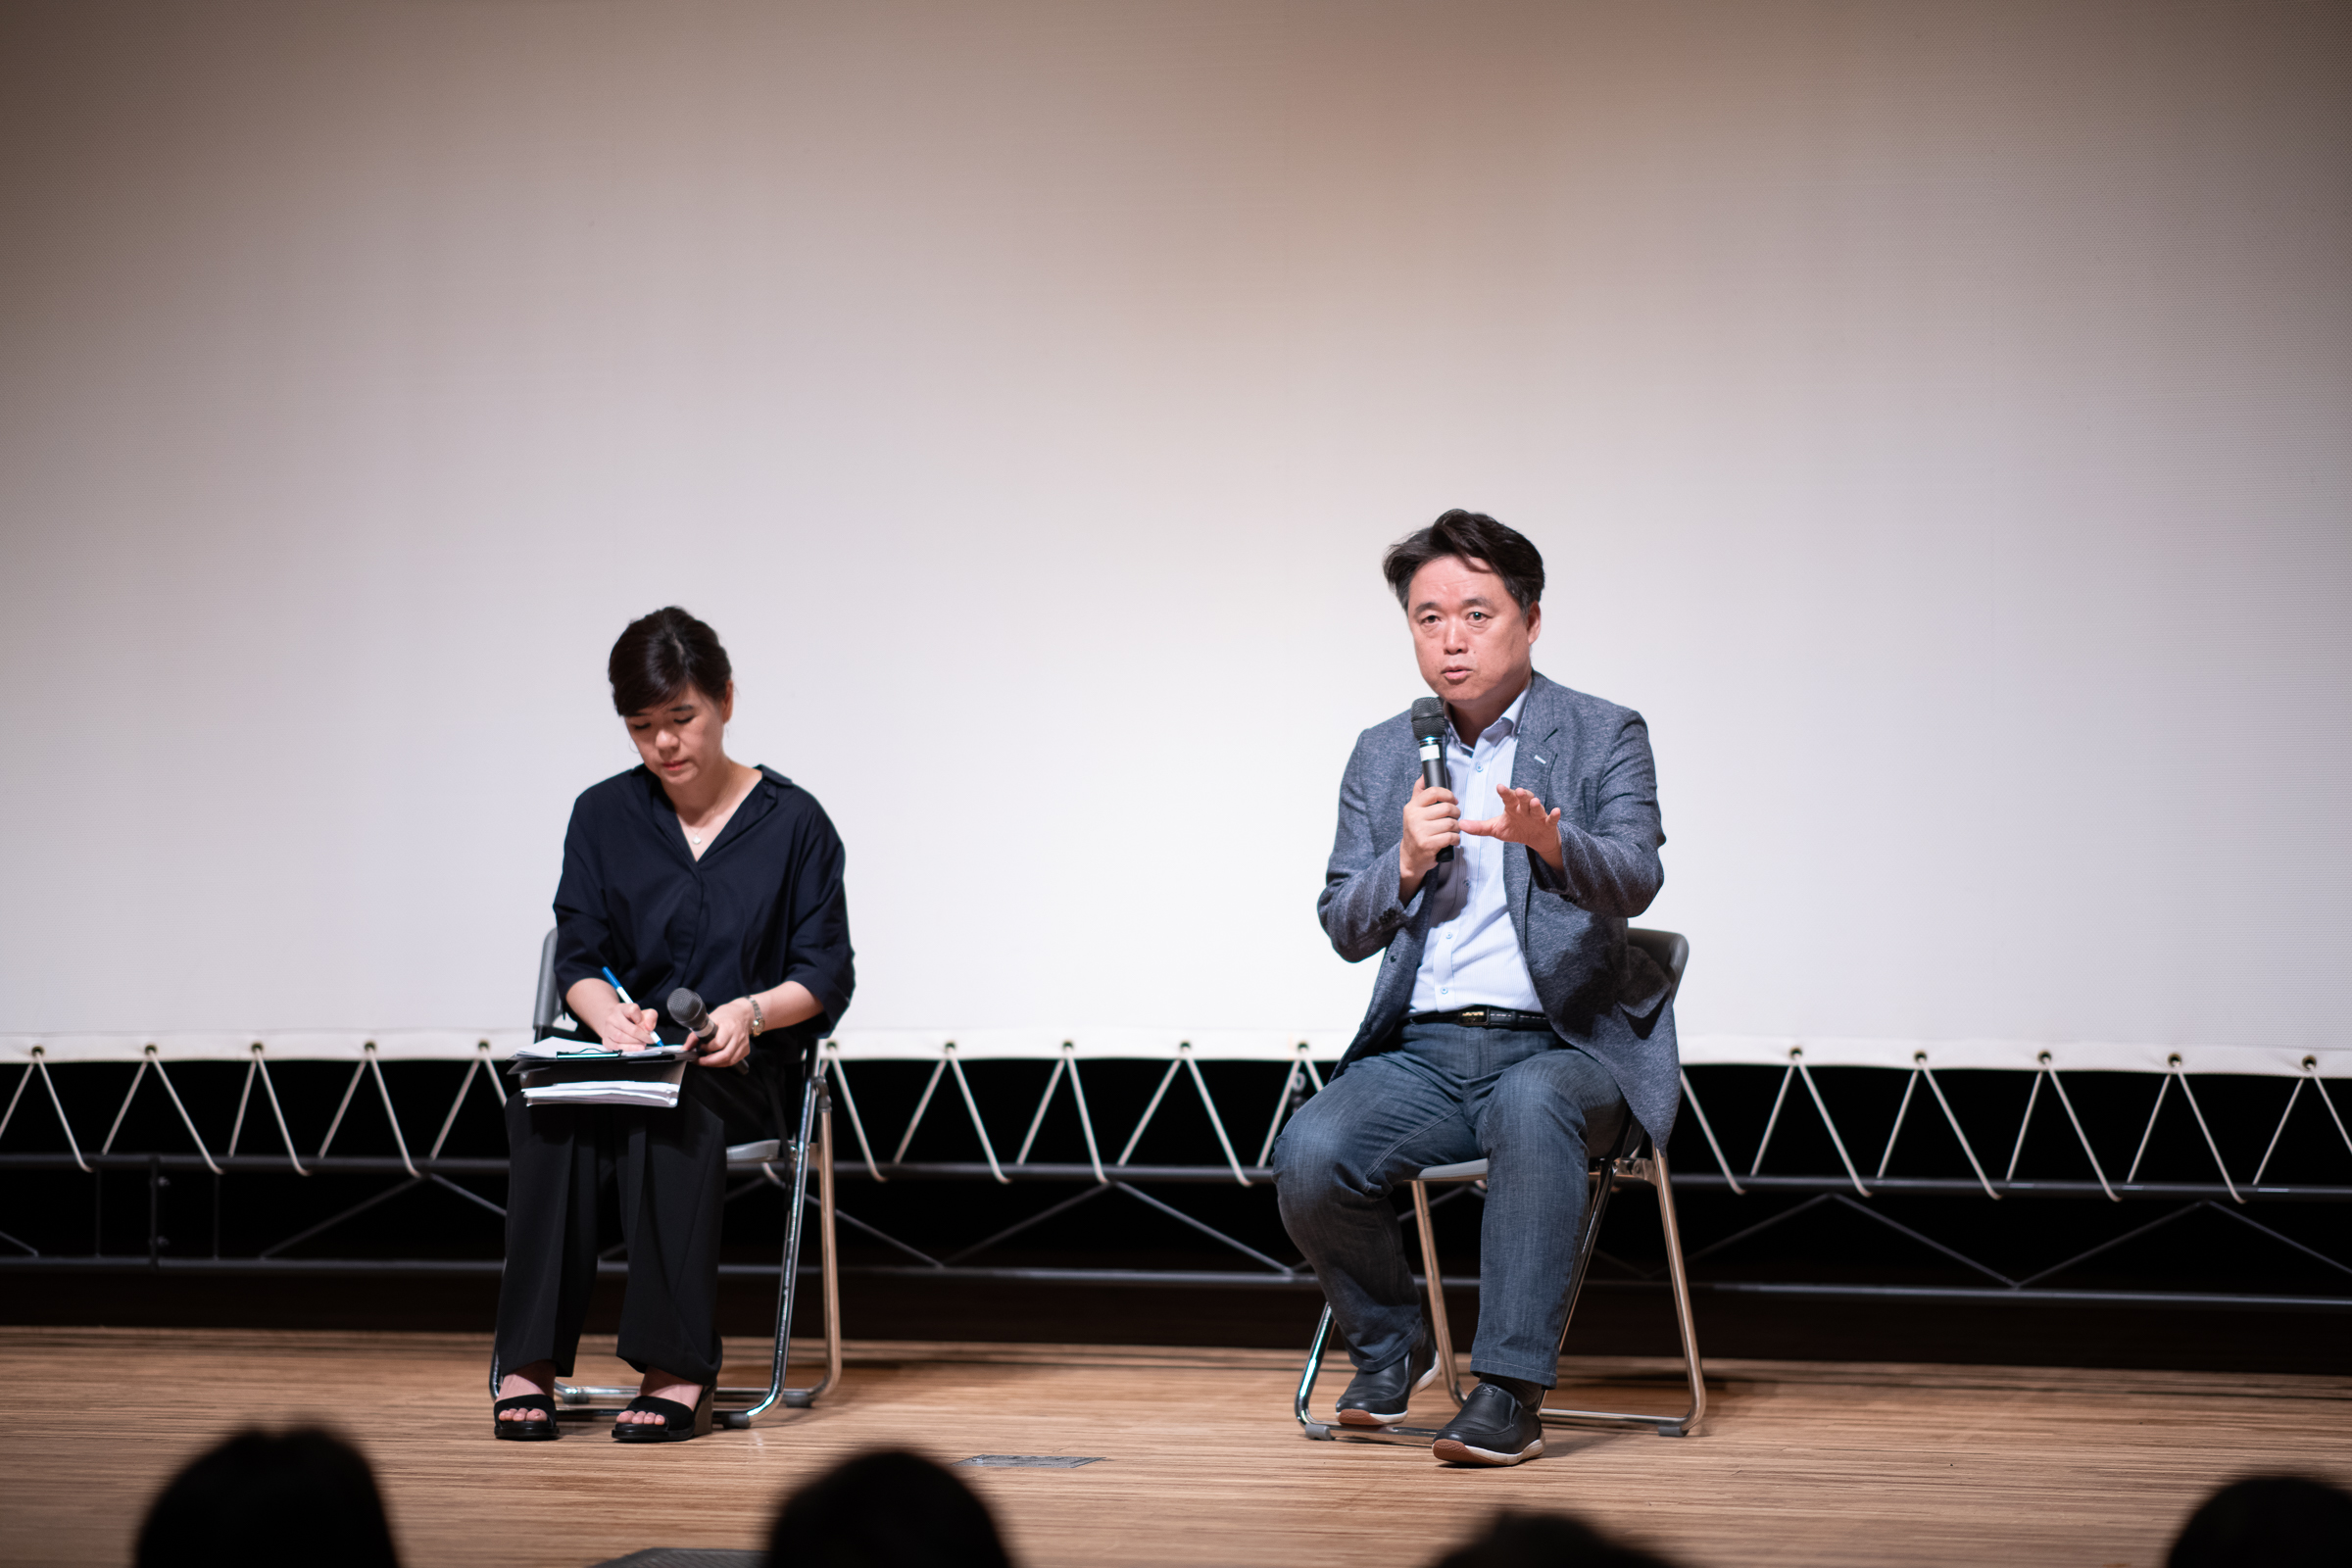  최승호 감독이 9일 오후 도쿄 나카노구 나카노제로홀에서 영화 <공범자들>에 대한 얘기를 하고 있다.